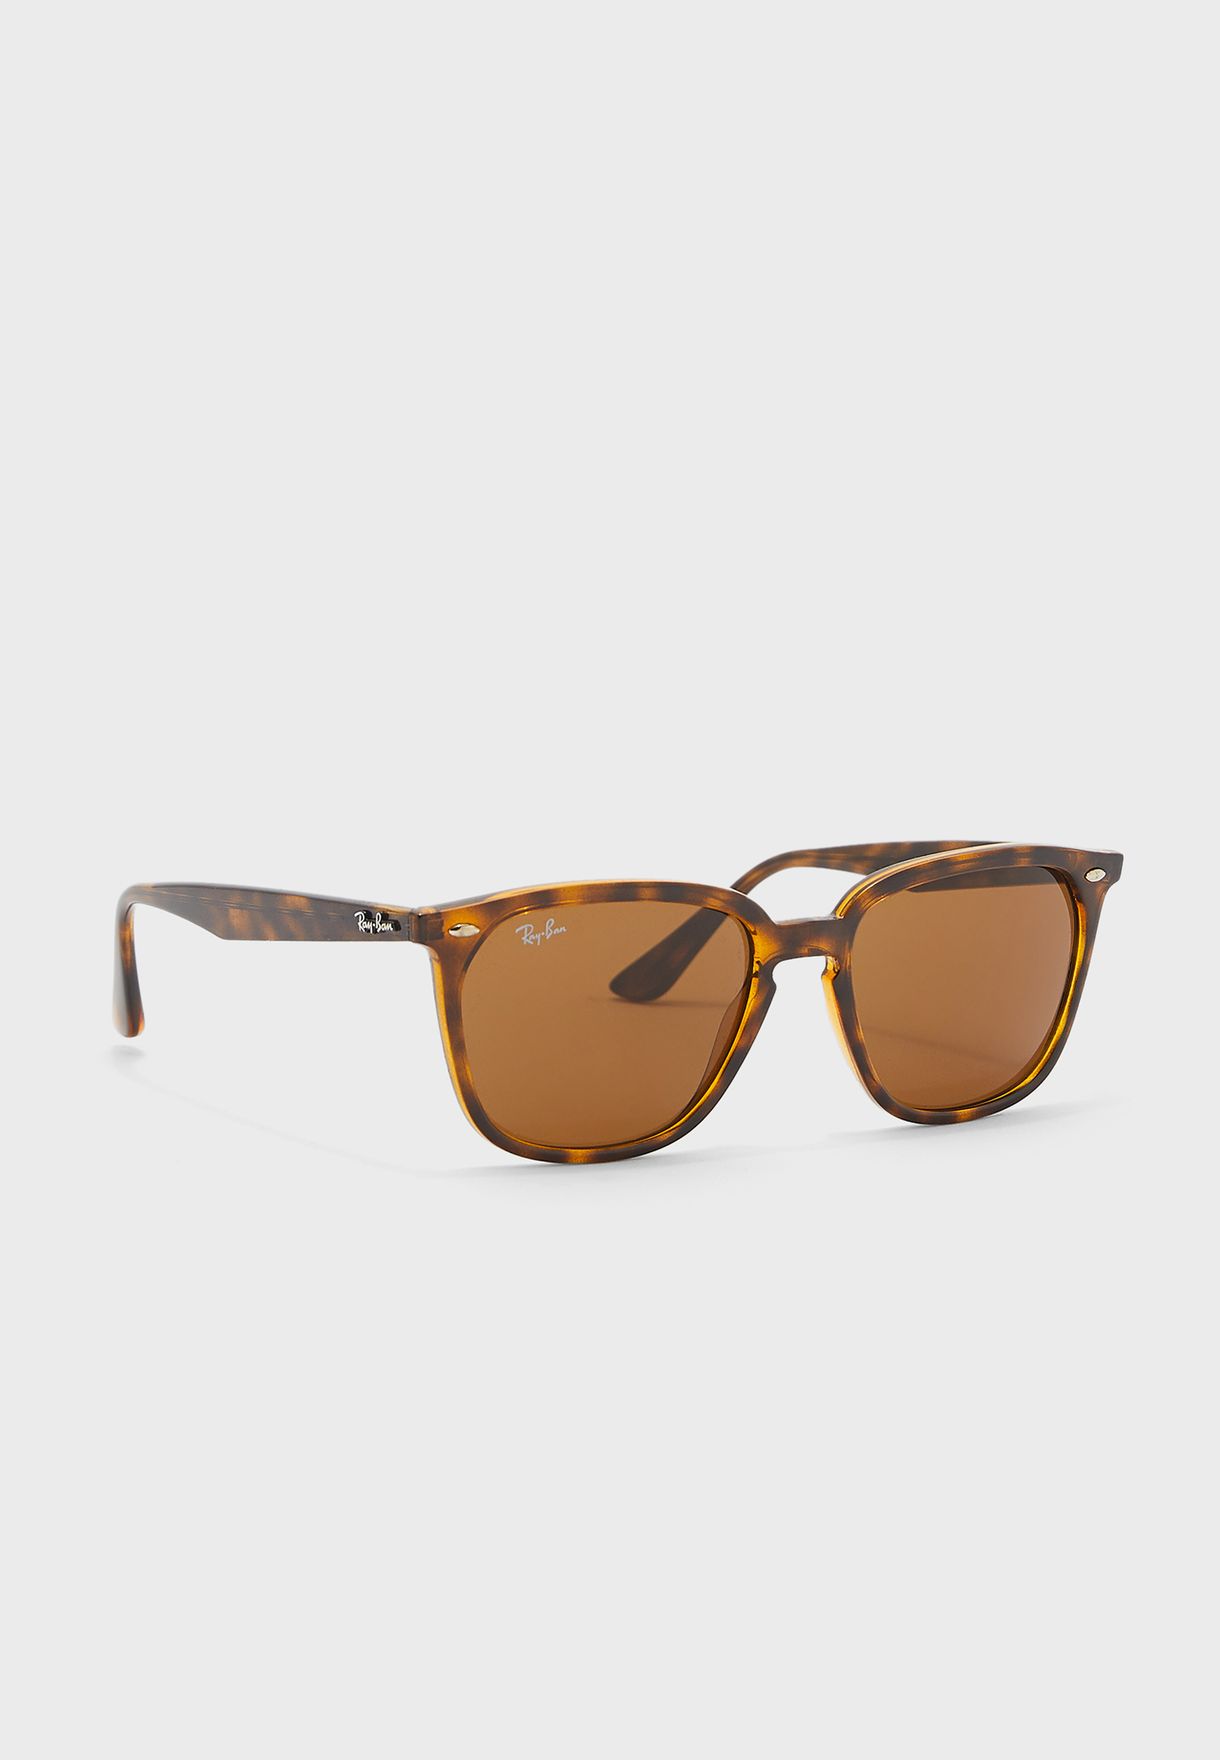 0Rb4362 Square Sunglasses